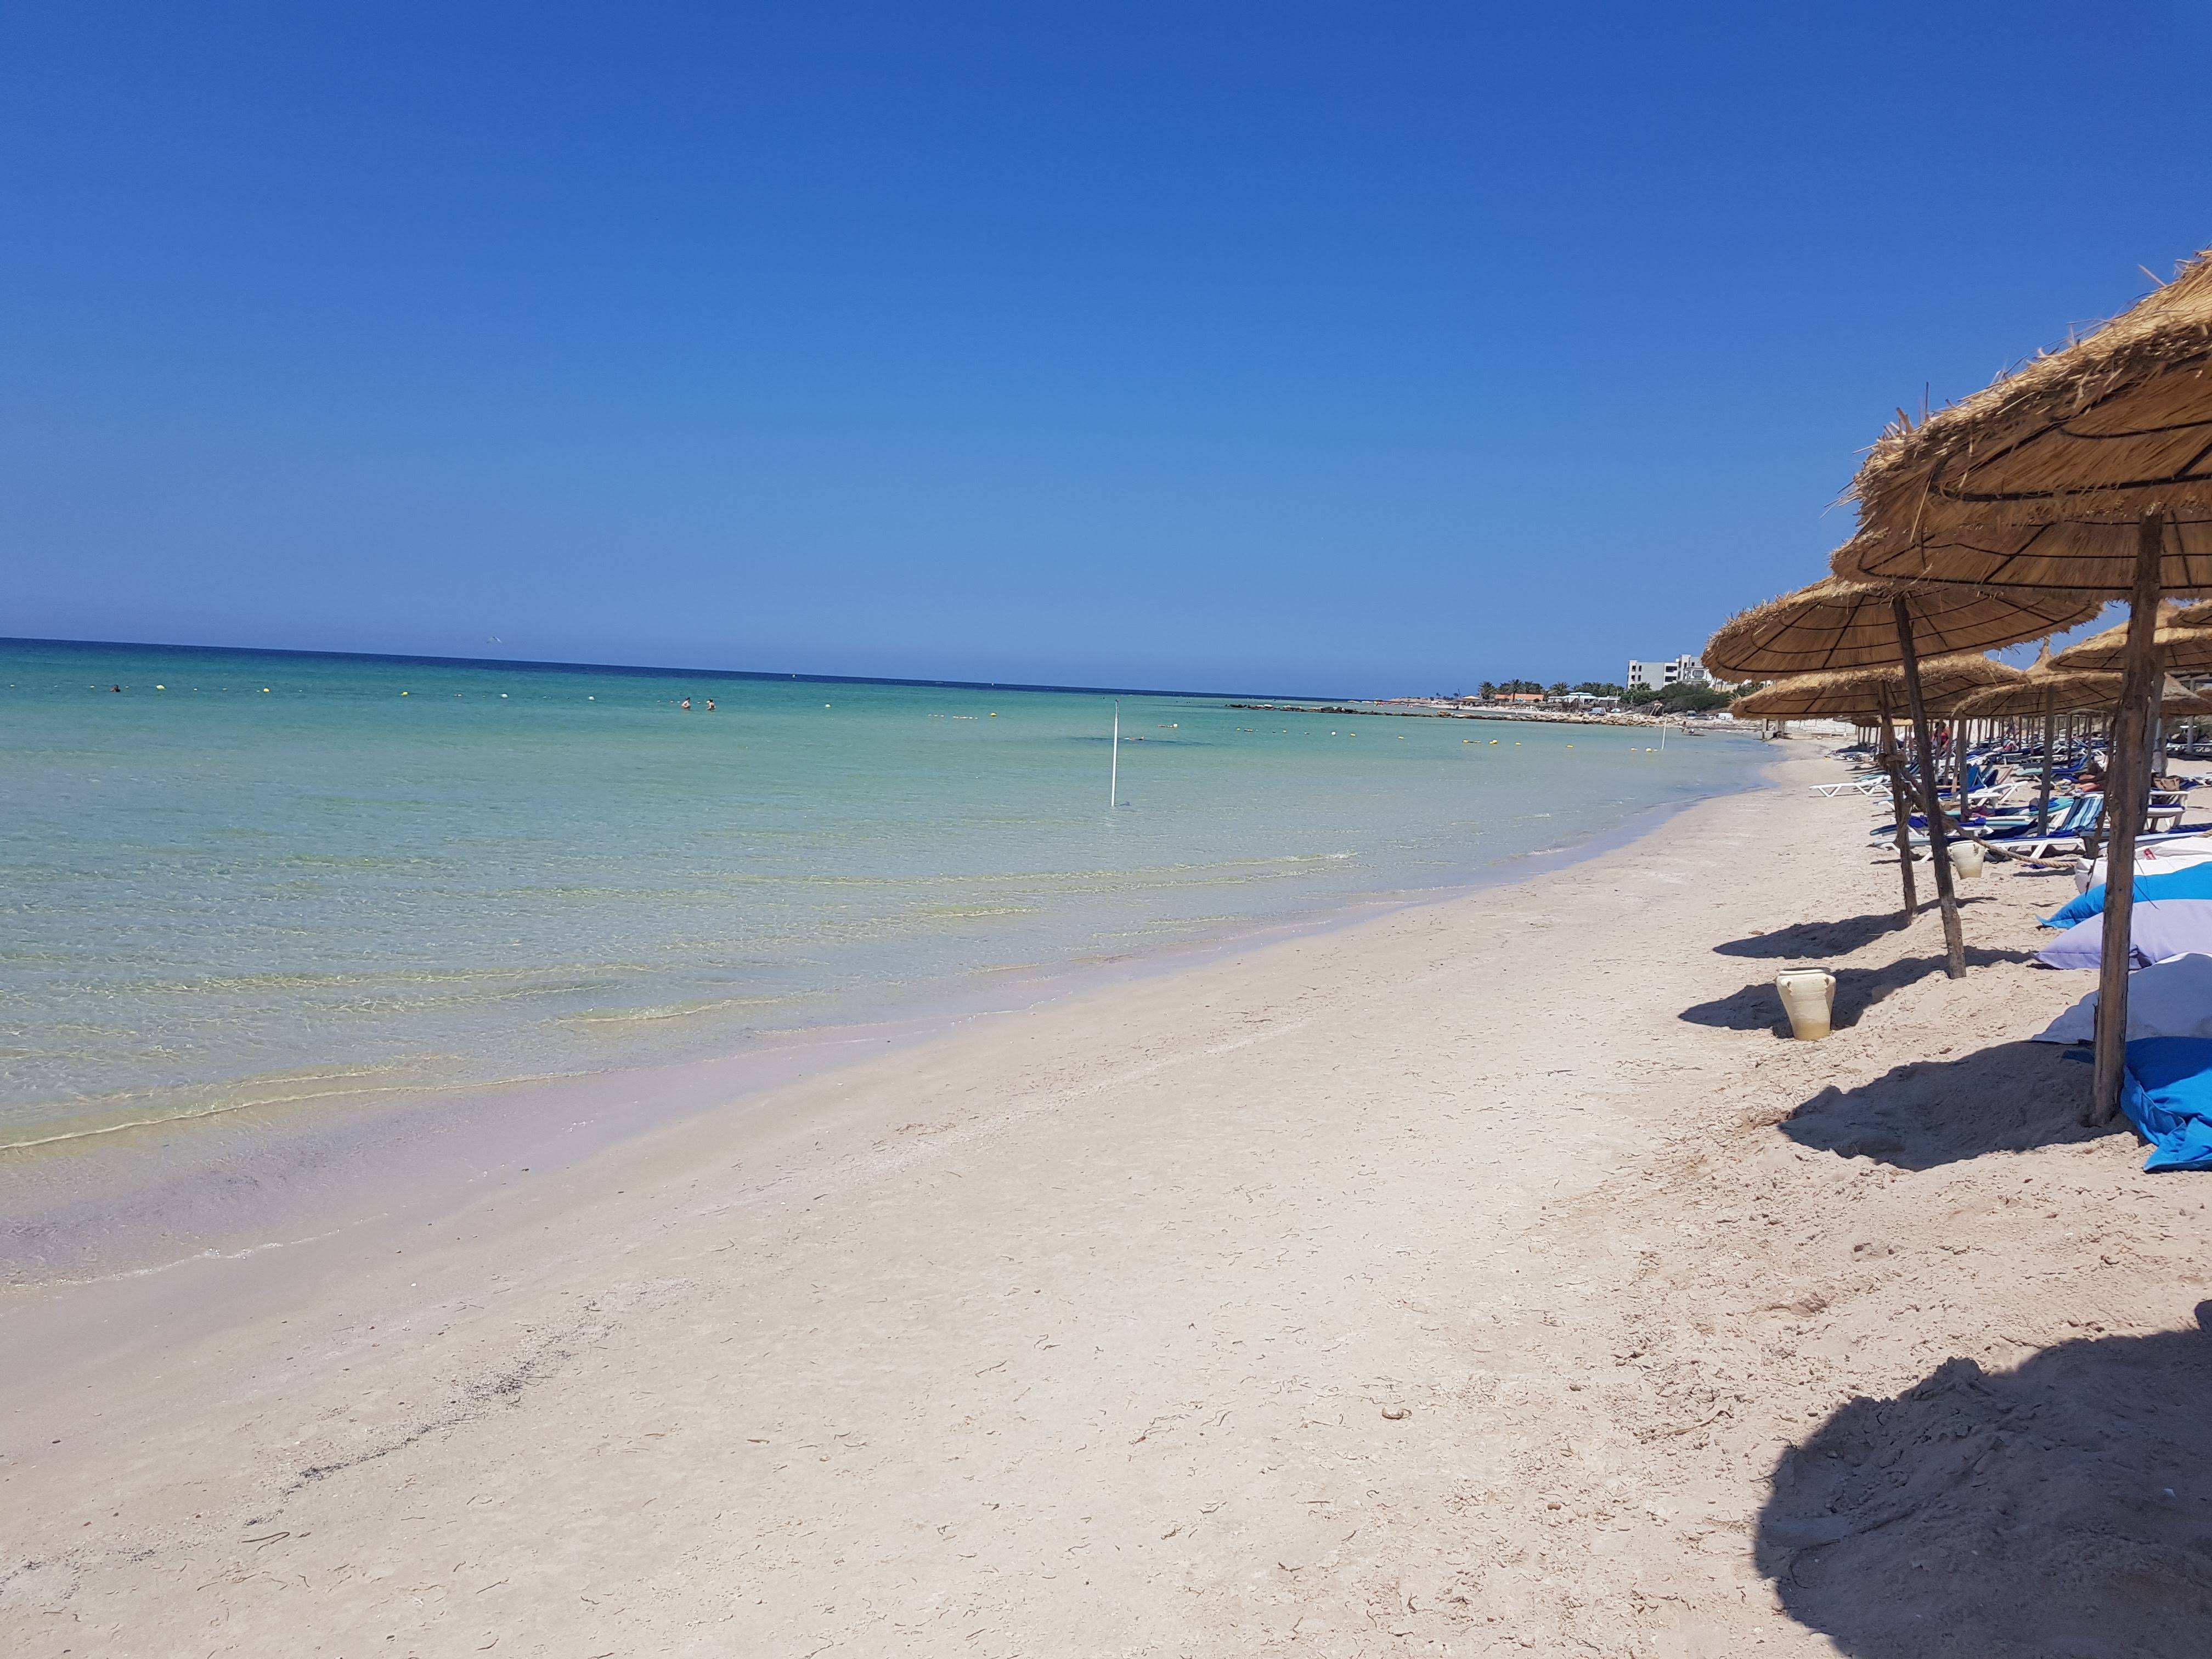 Монастир, тунис 2022: фото, отзывы об отдыхе, пляжи, туры и развлечения